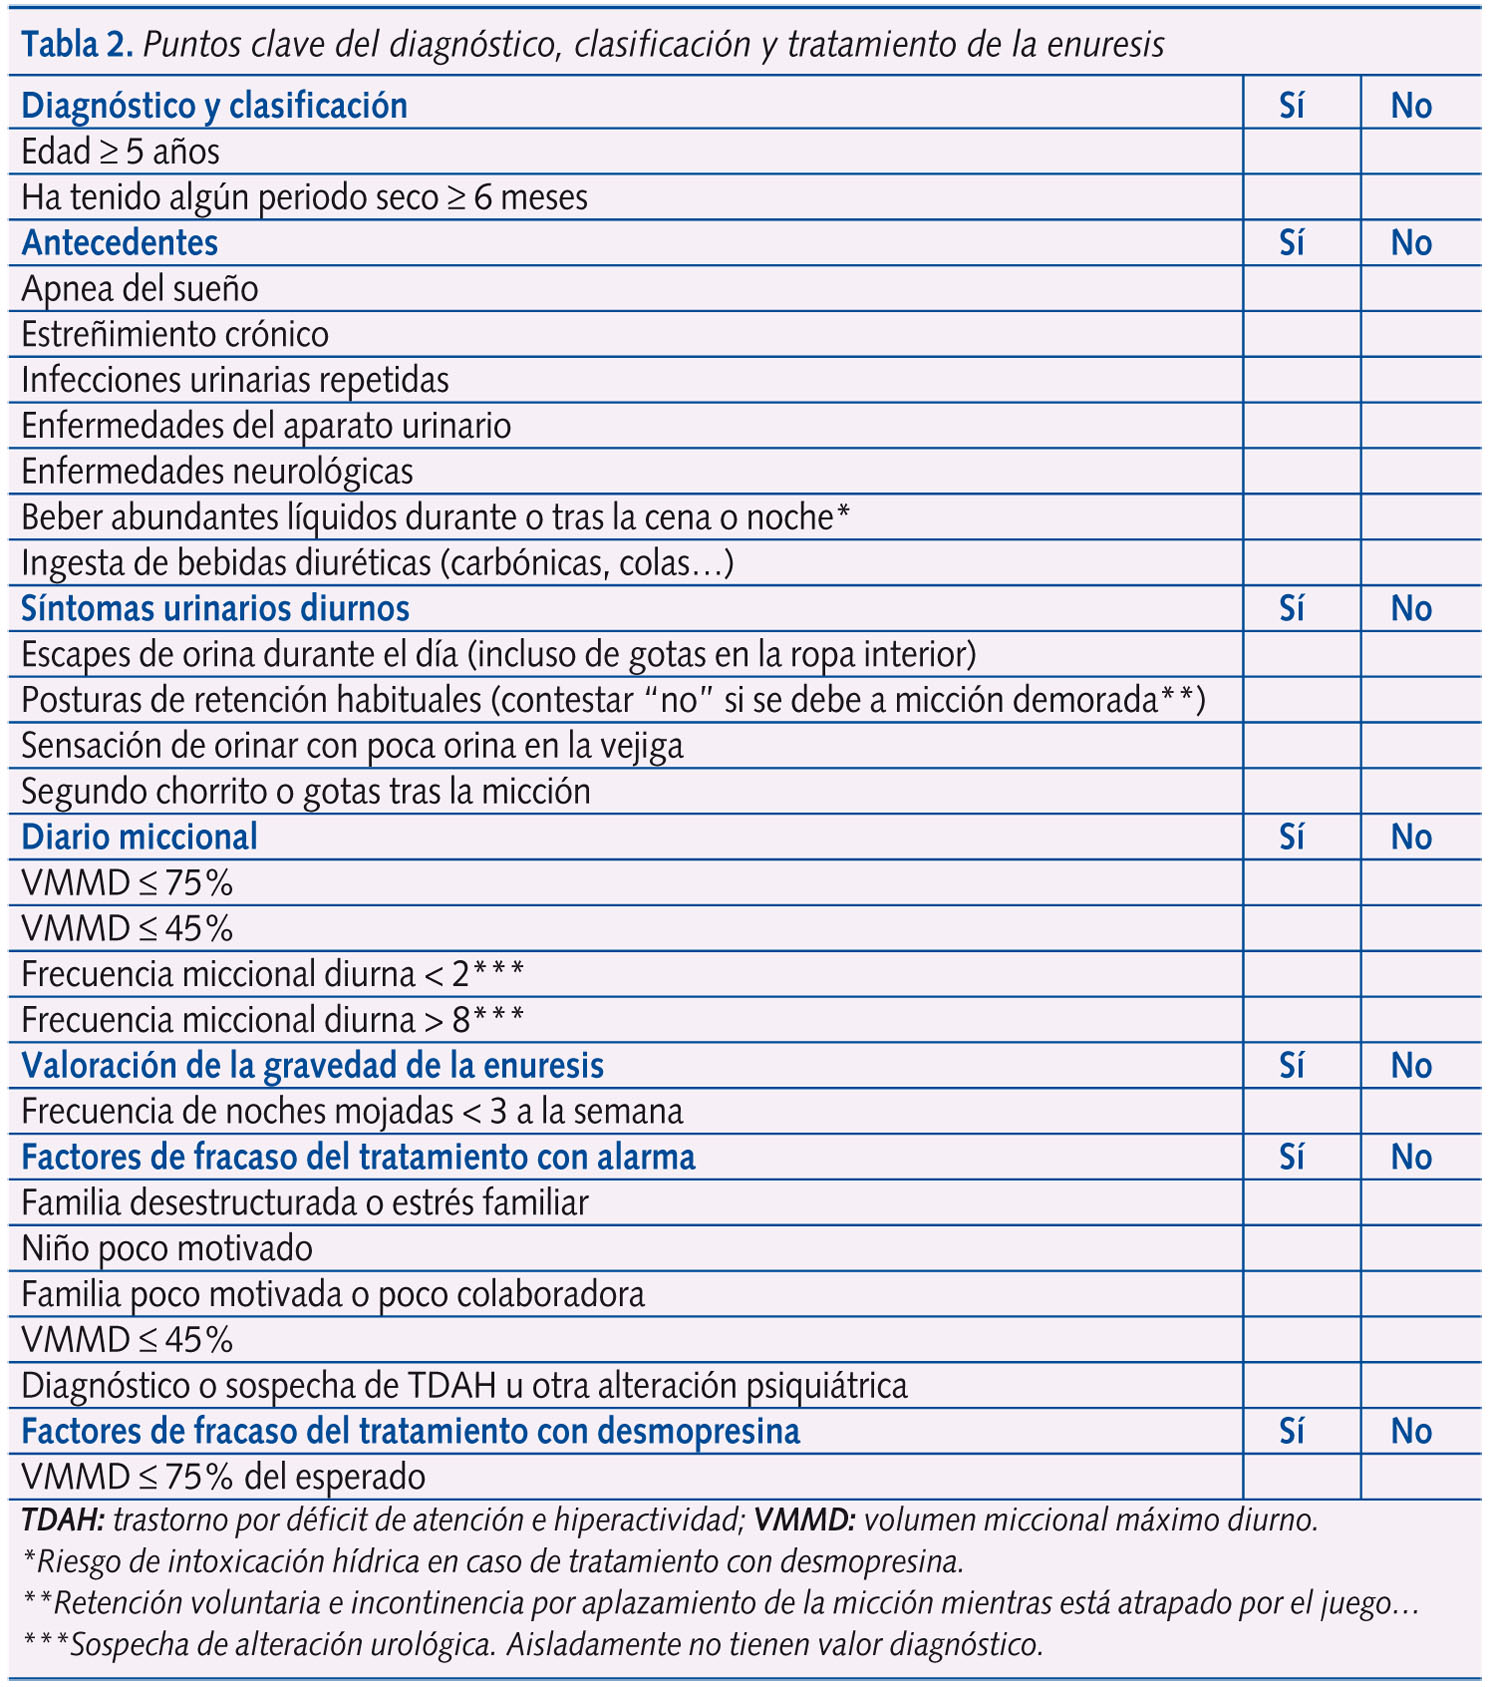 Tabla 2. Puntos clave del diagnóstico, clasificación y tratamiento de la enuresis